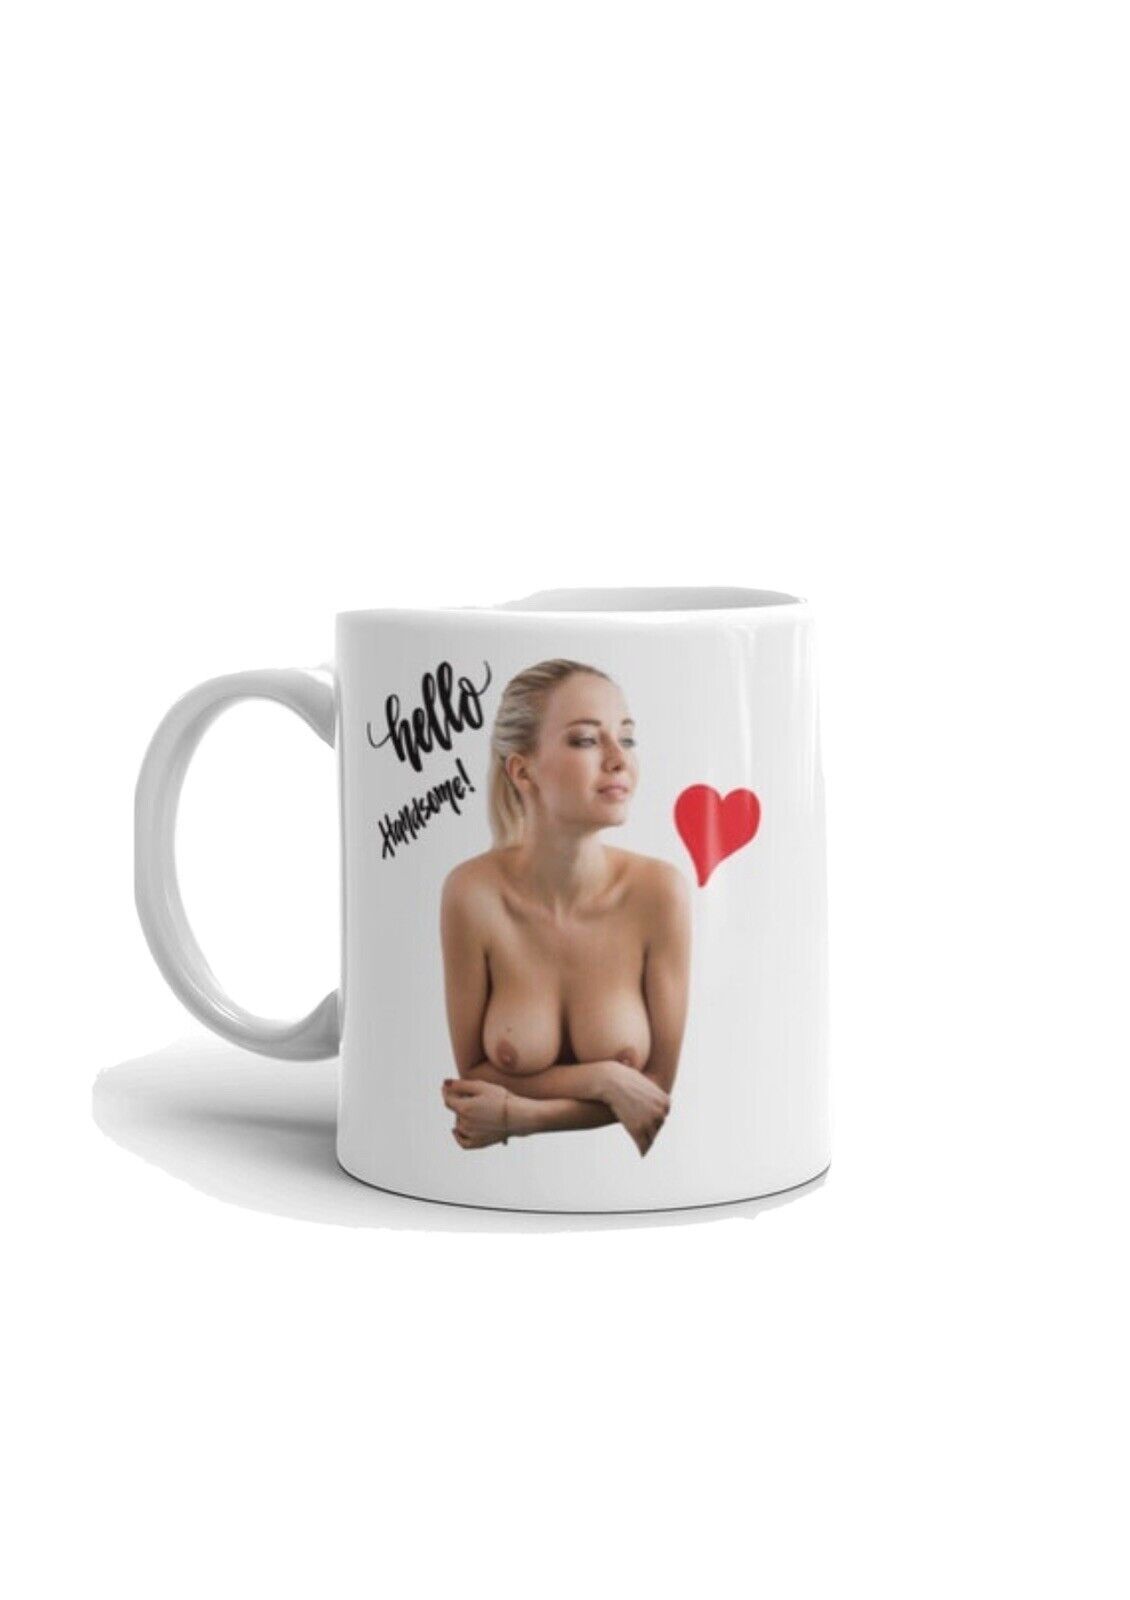 11oz Coffee Mug, Vulgar Coffee Mug, Boobs Coffee Mug, Coffee Mug With Breast